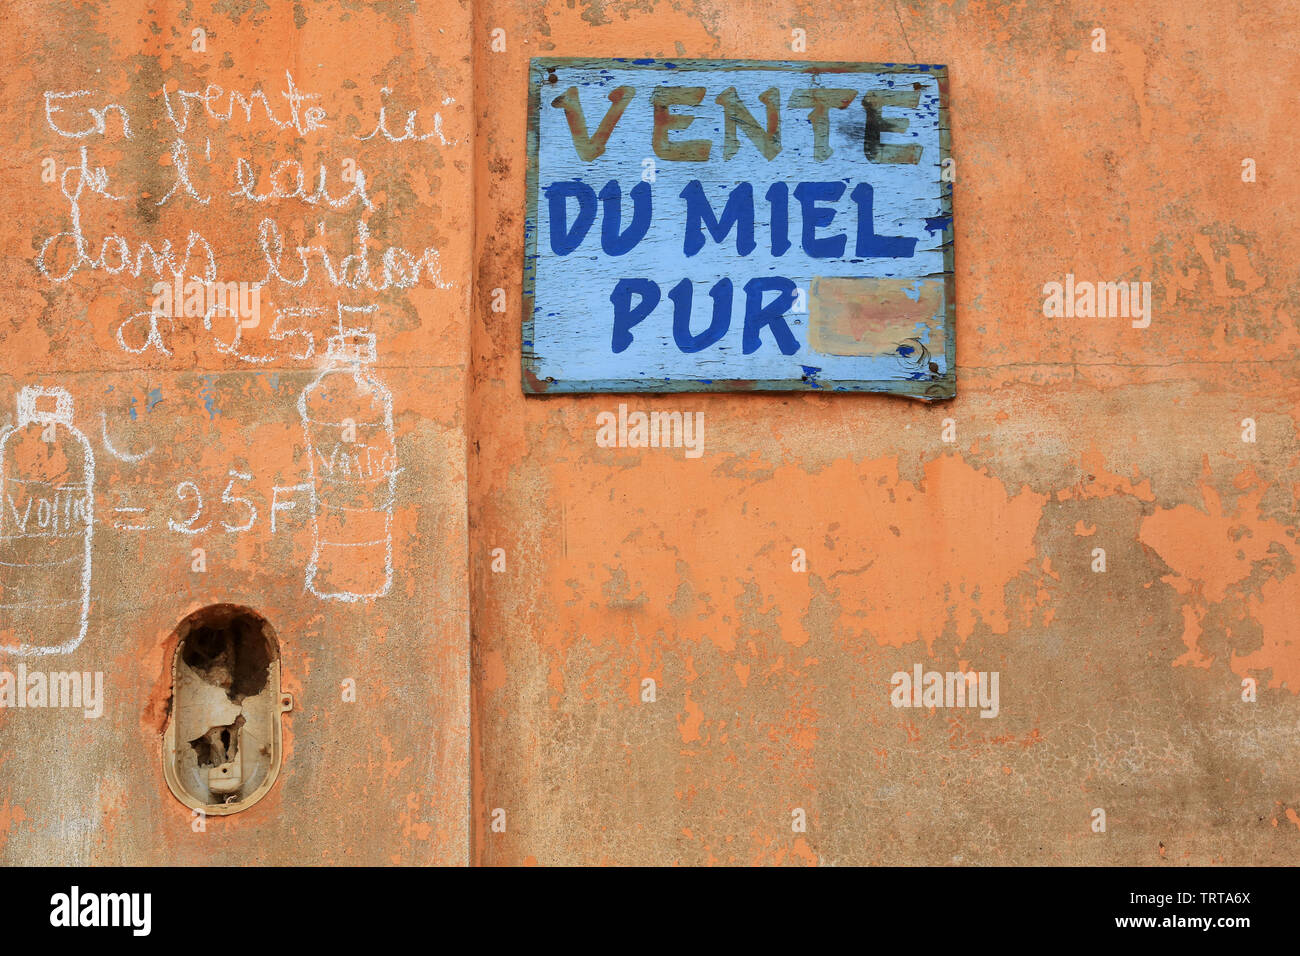 Vente de miel pur. Lomé. Togo. Afrique de l'Ouest. Stock Photo